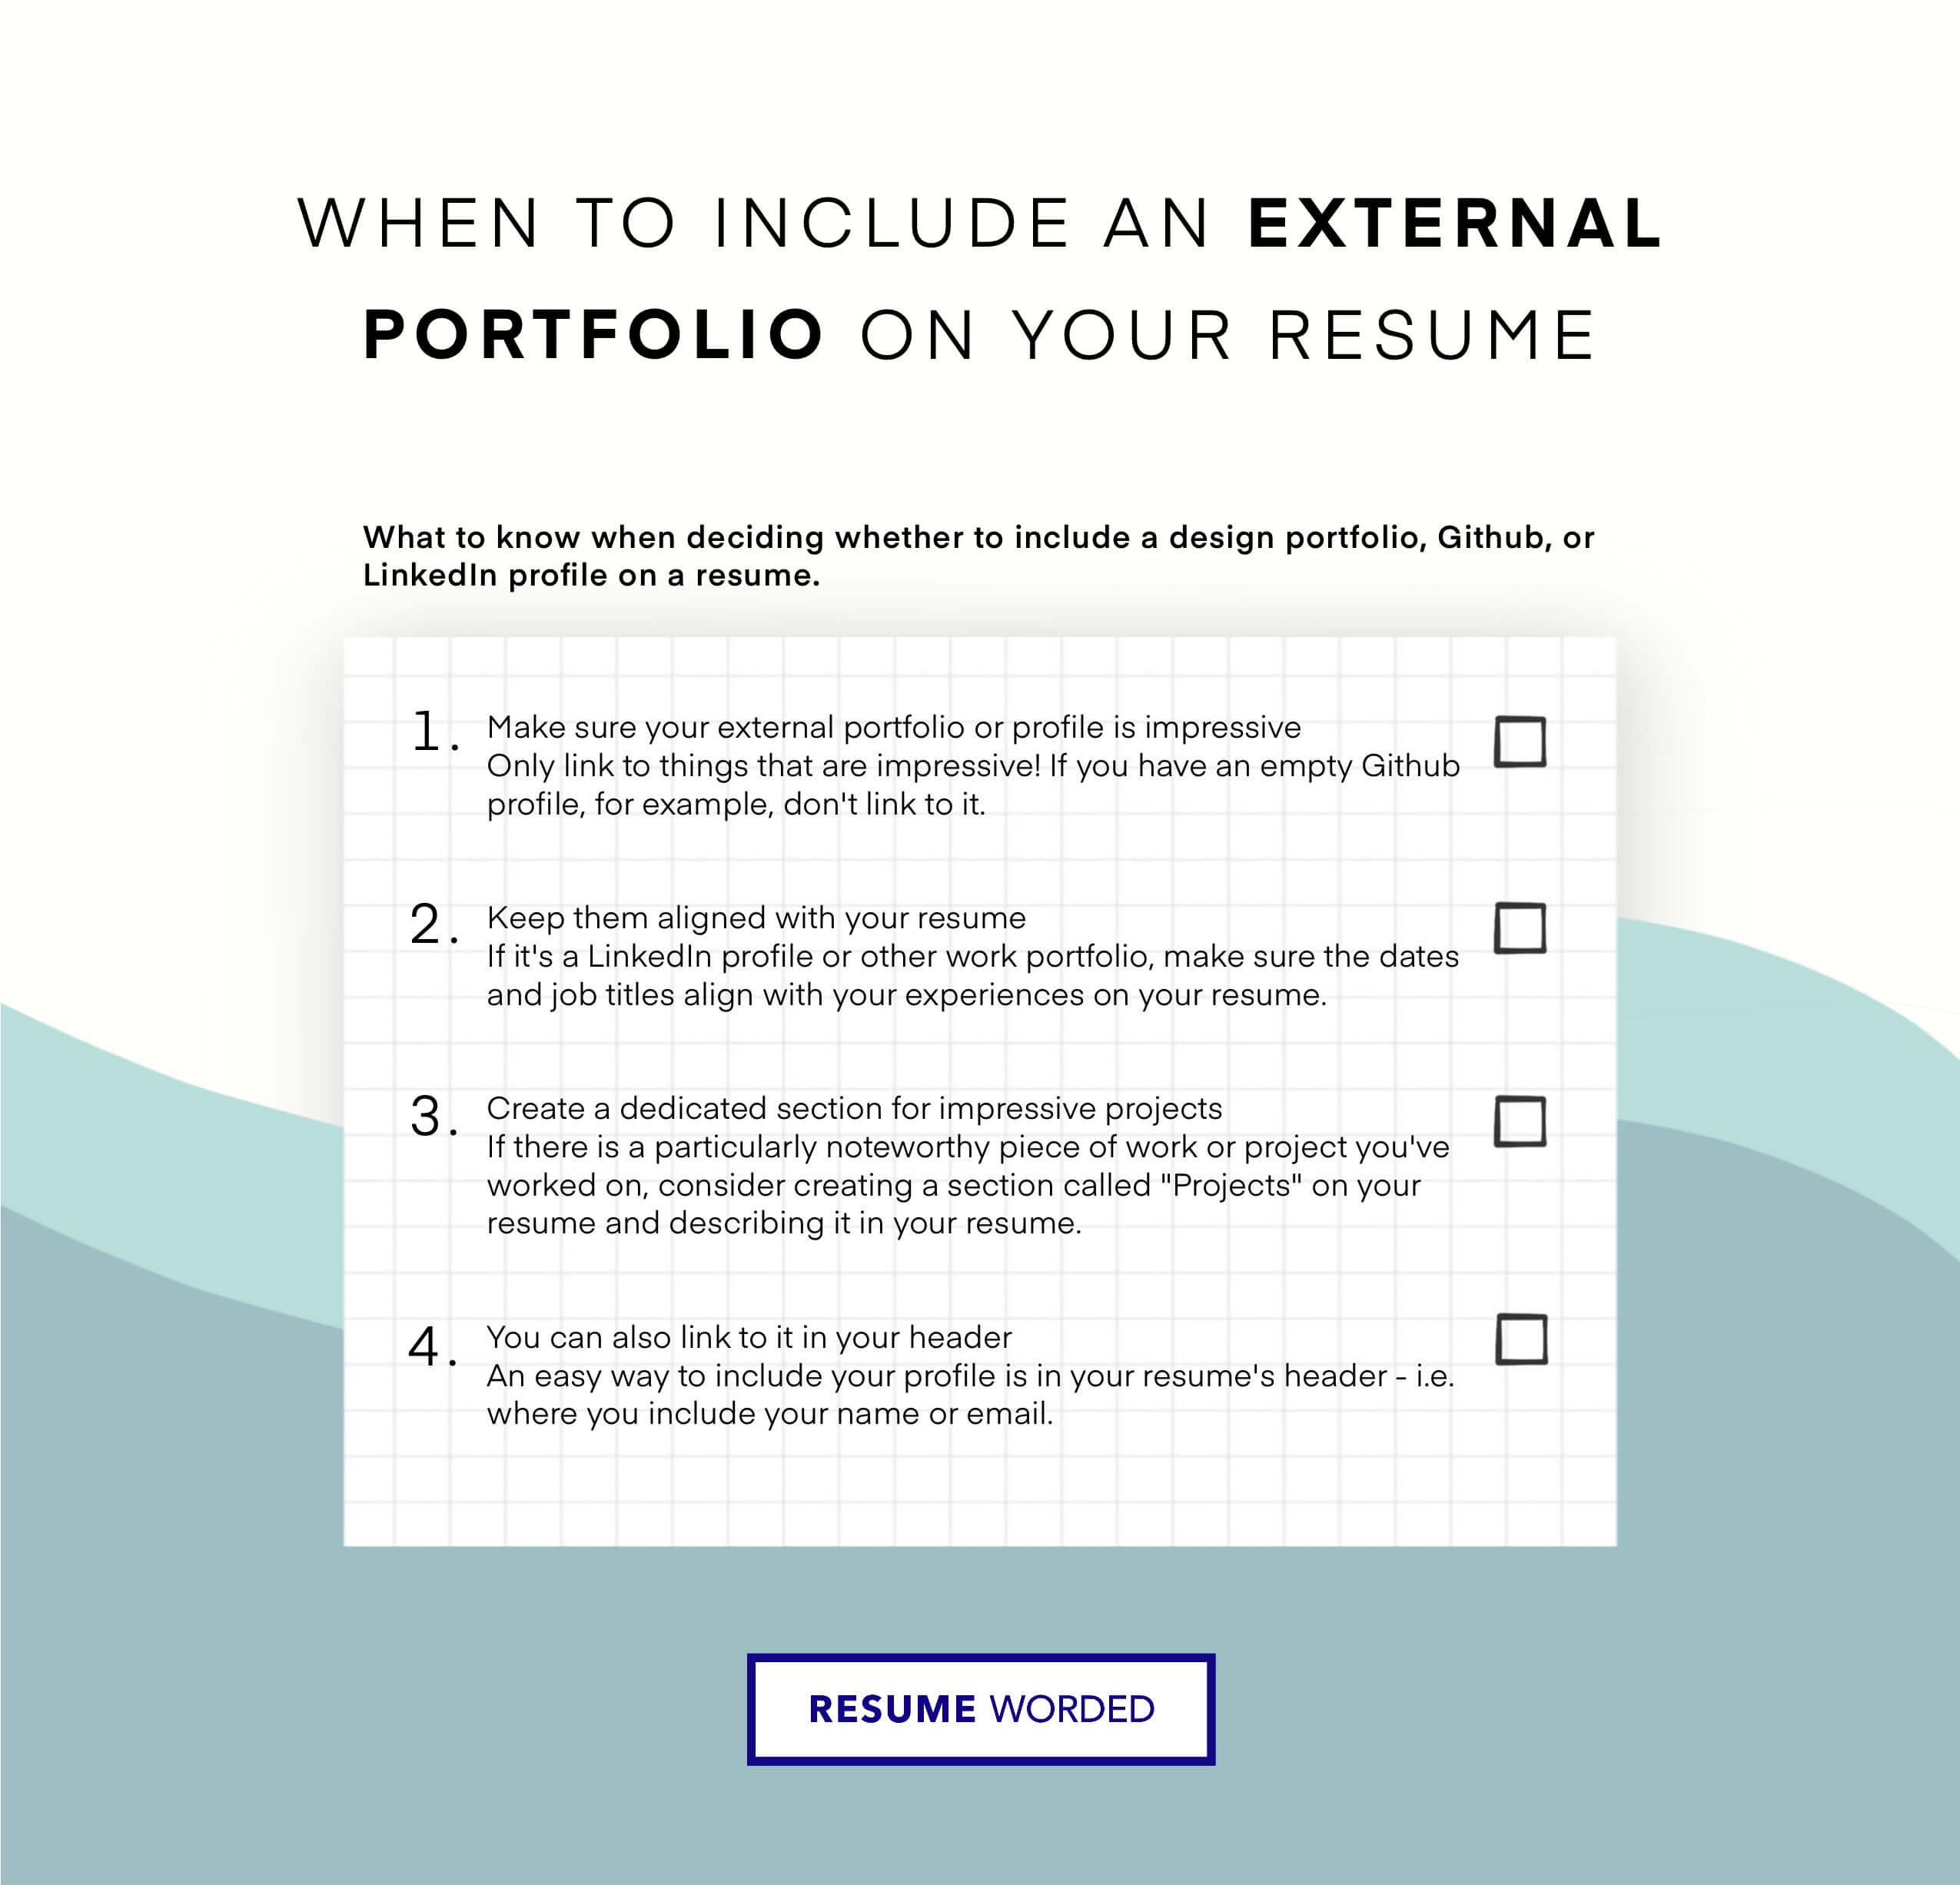 Showcase your project portfolio - Freelance Web Developer Resume